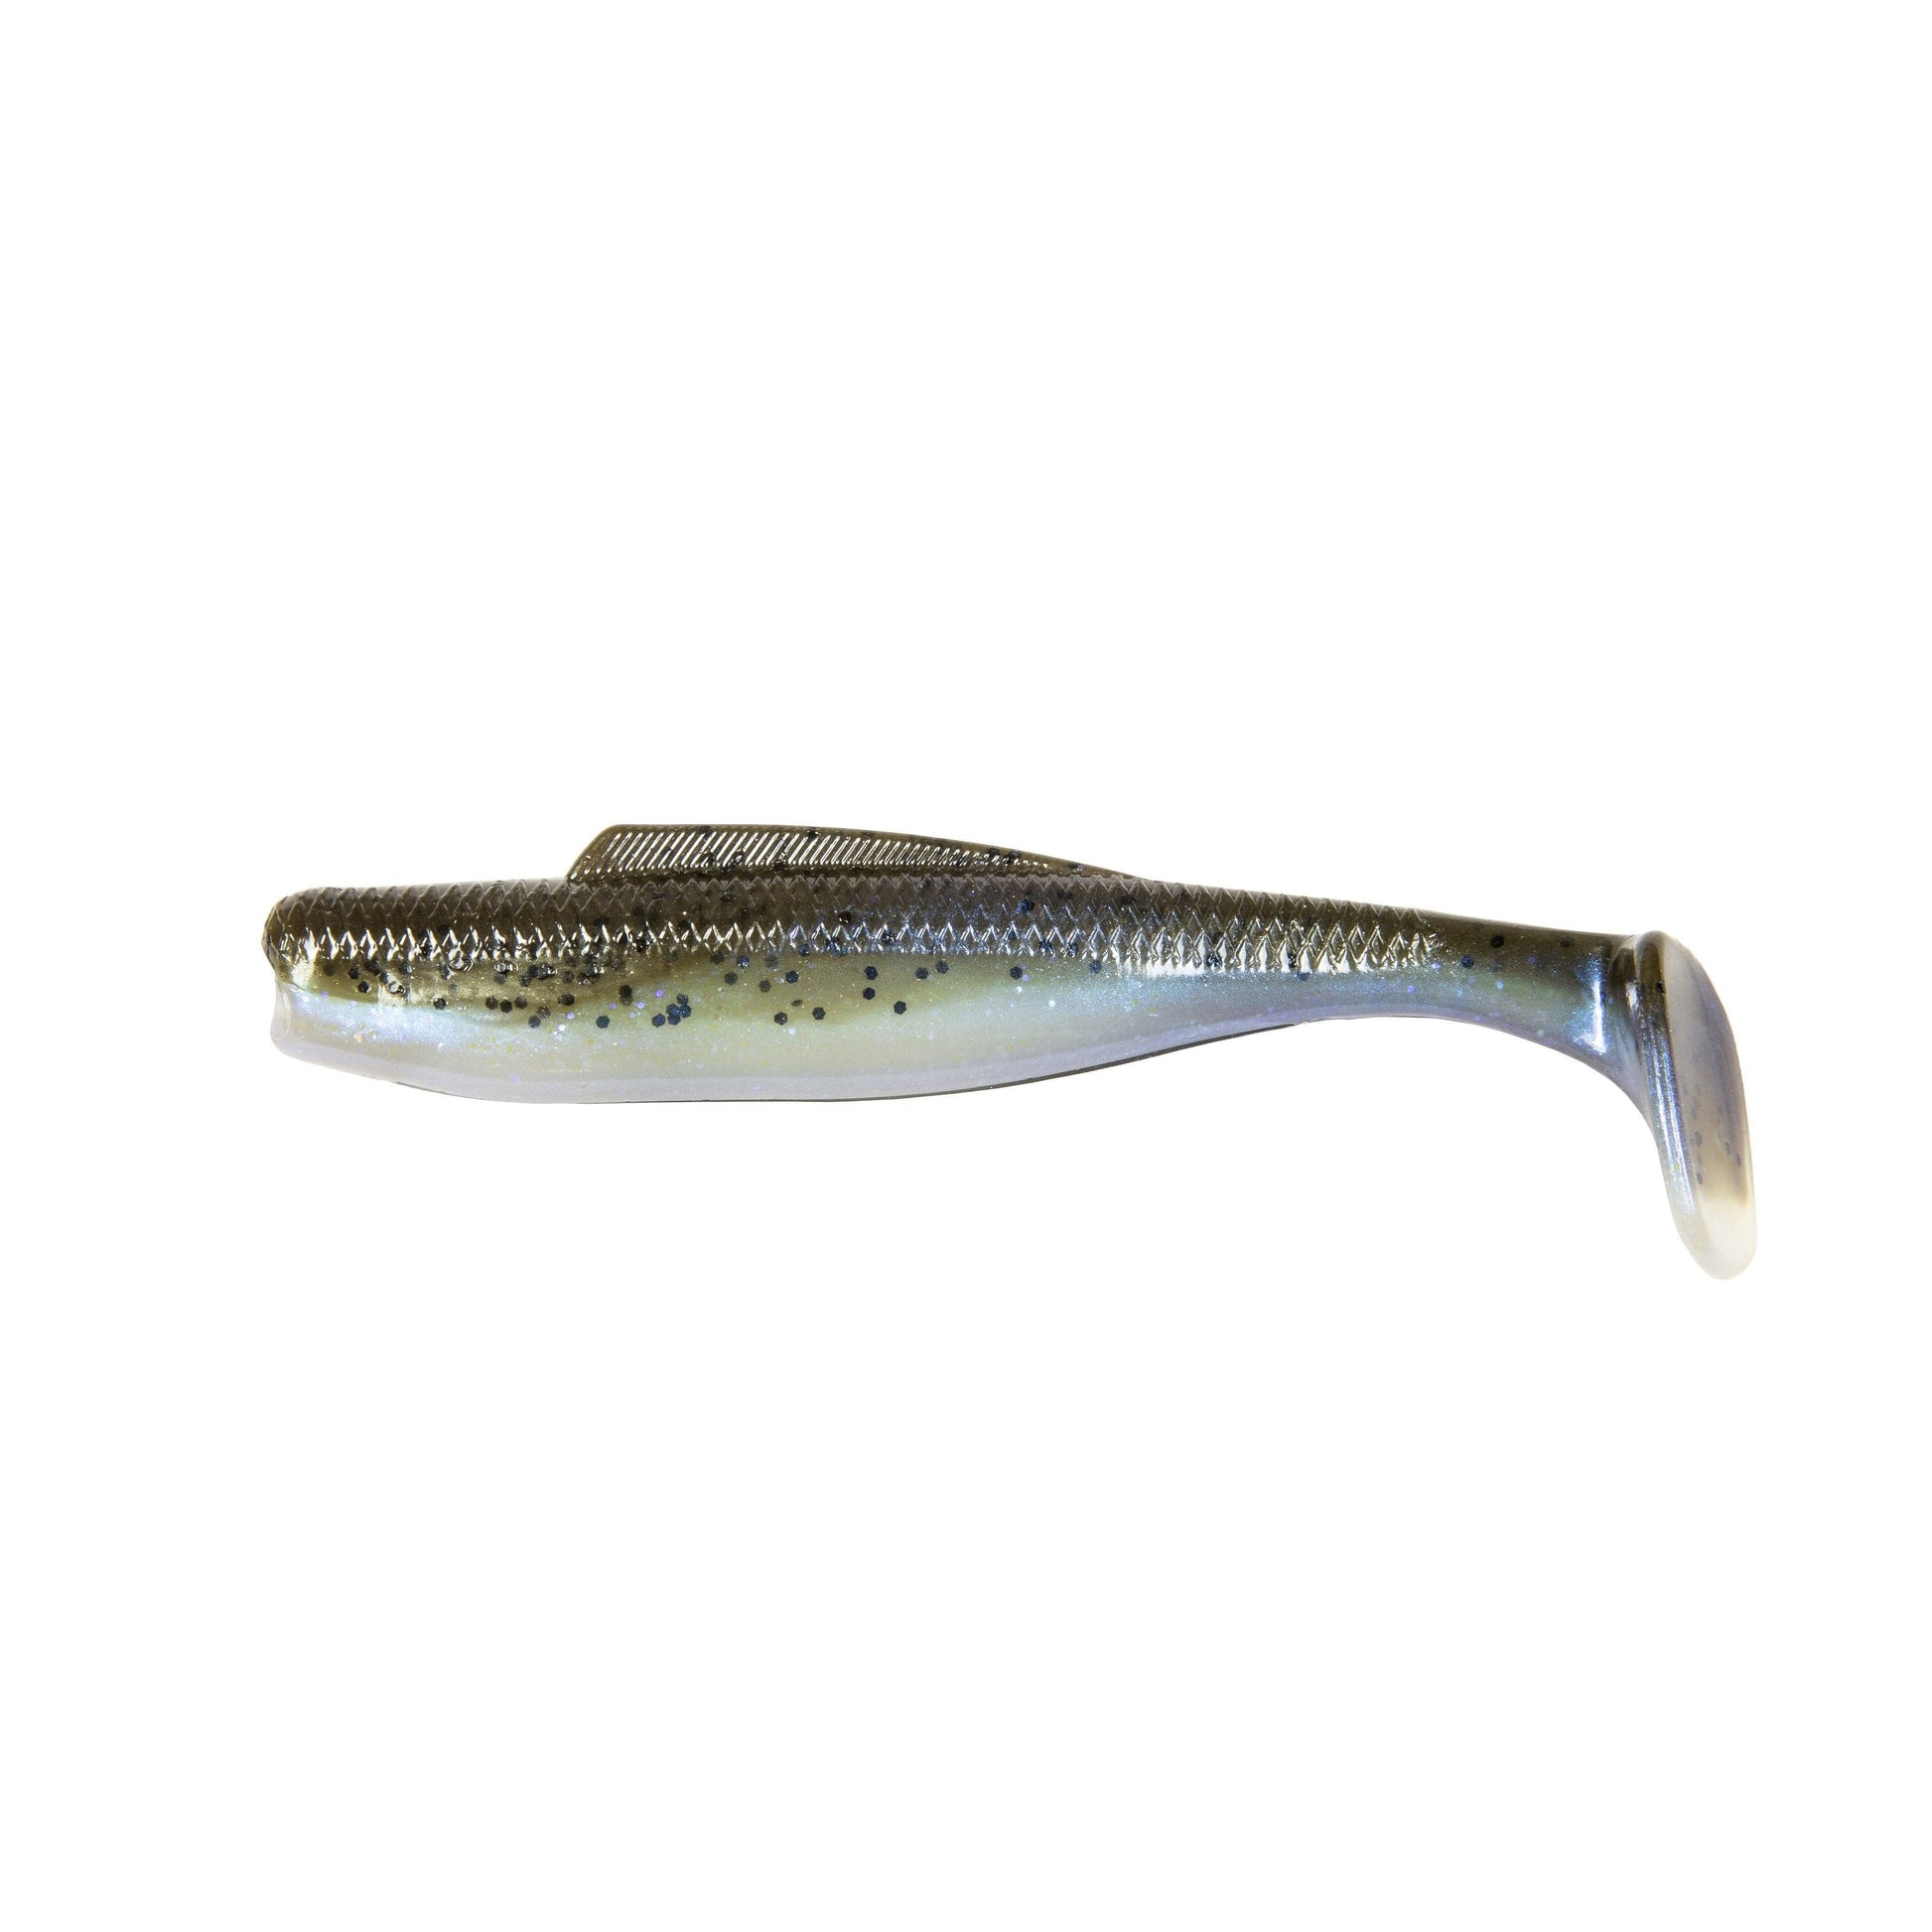 https://www.hammondsfishing.com/cdn/shop/products/Z-Man-Diezel-Minnowz-5-The-Deal-4-Pack_fec5e71d-da3a-4911-a99f-03e18574829f.jpg?v=1666120872&width=1946